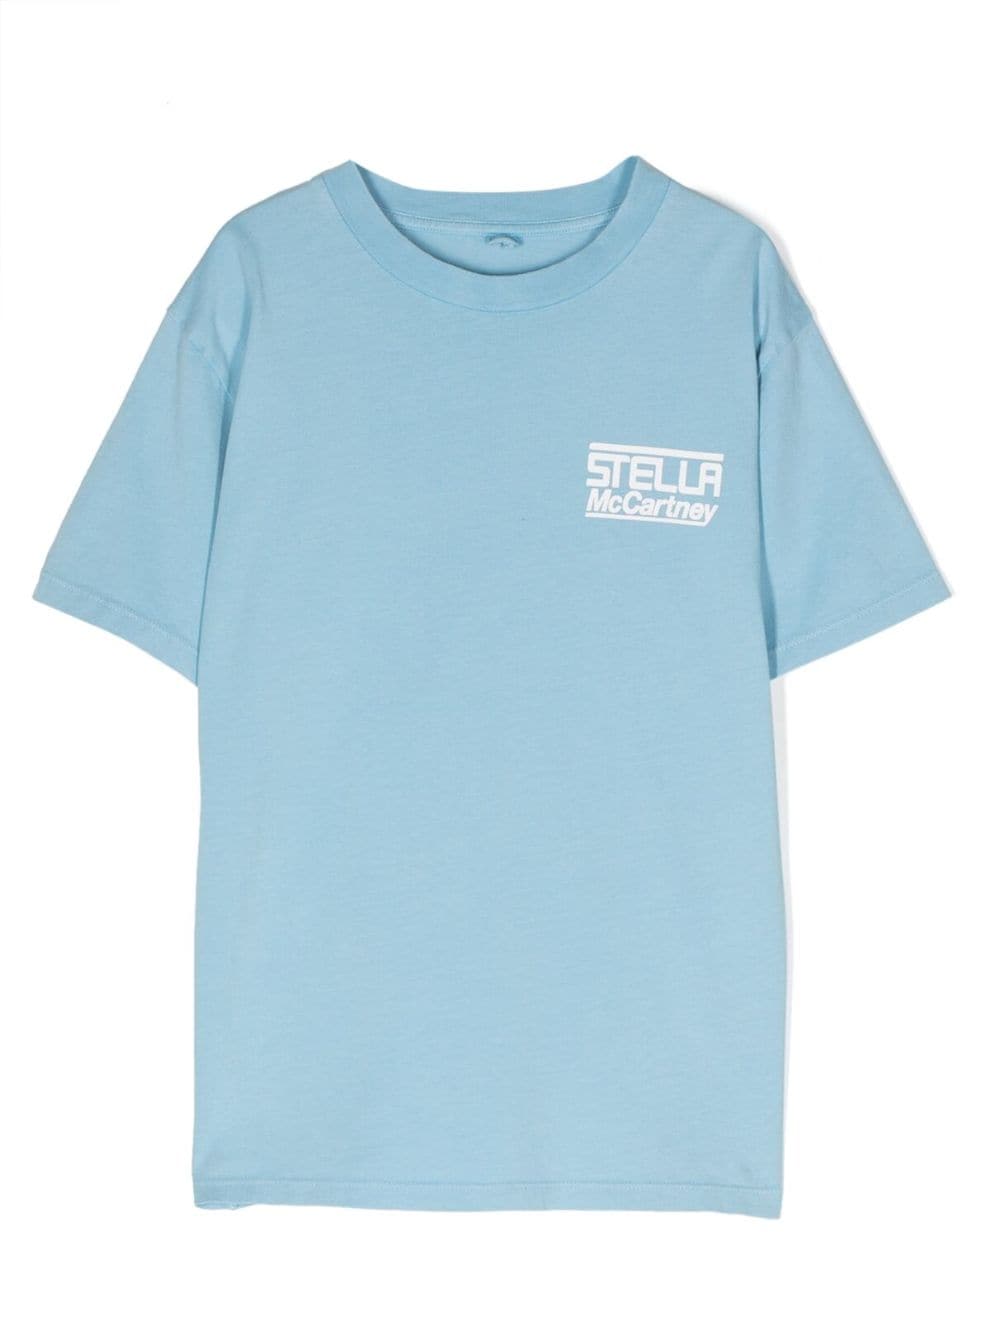 Stella McCartney Kids logo-print cotton T-shirt - Blue von Stella McCartney Kids